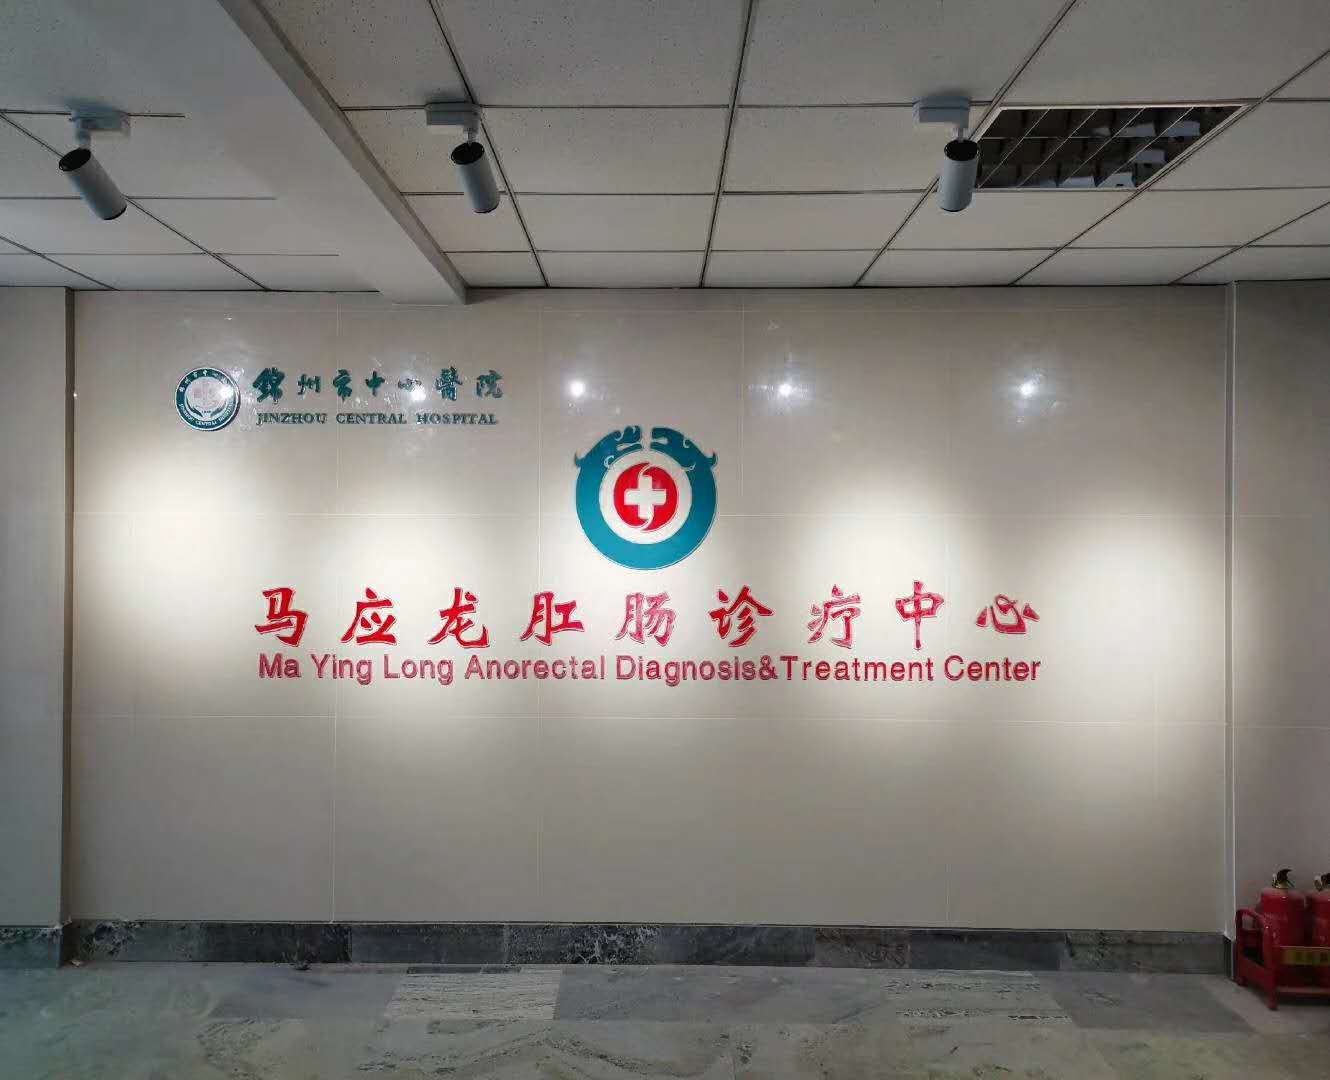  锦州市中心医院马应龙肛肠诊疗中心宣传片